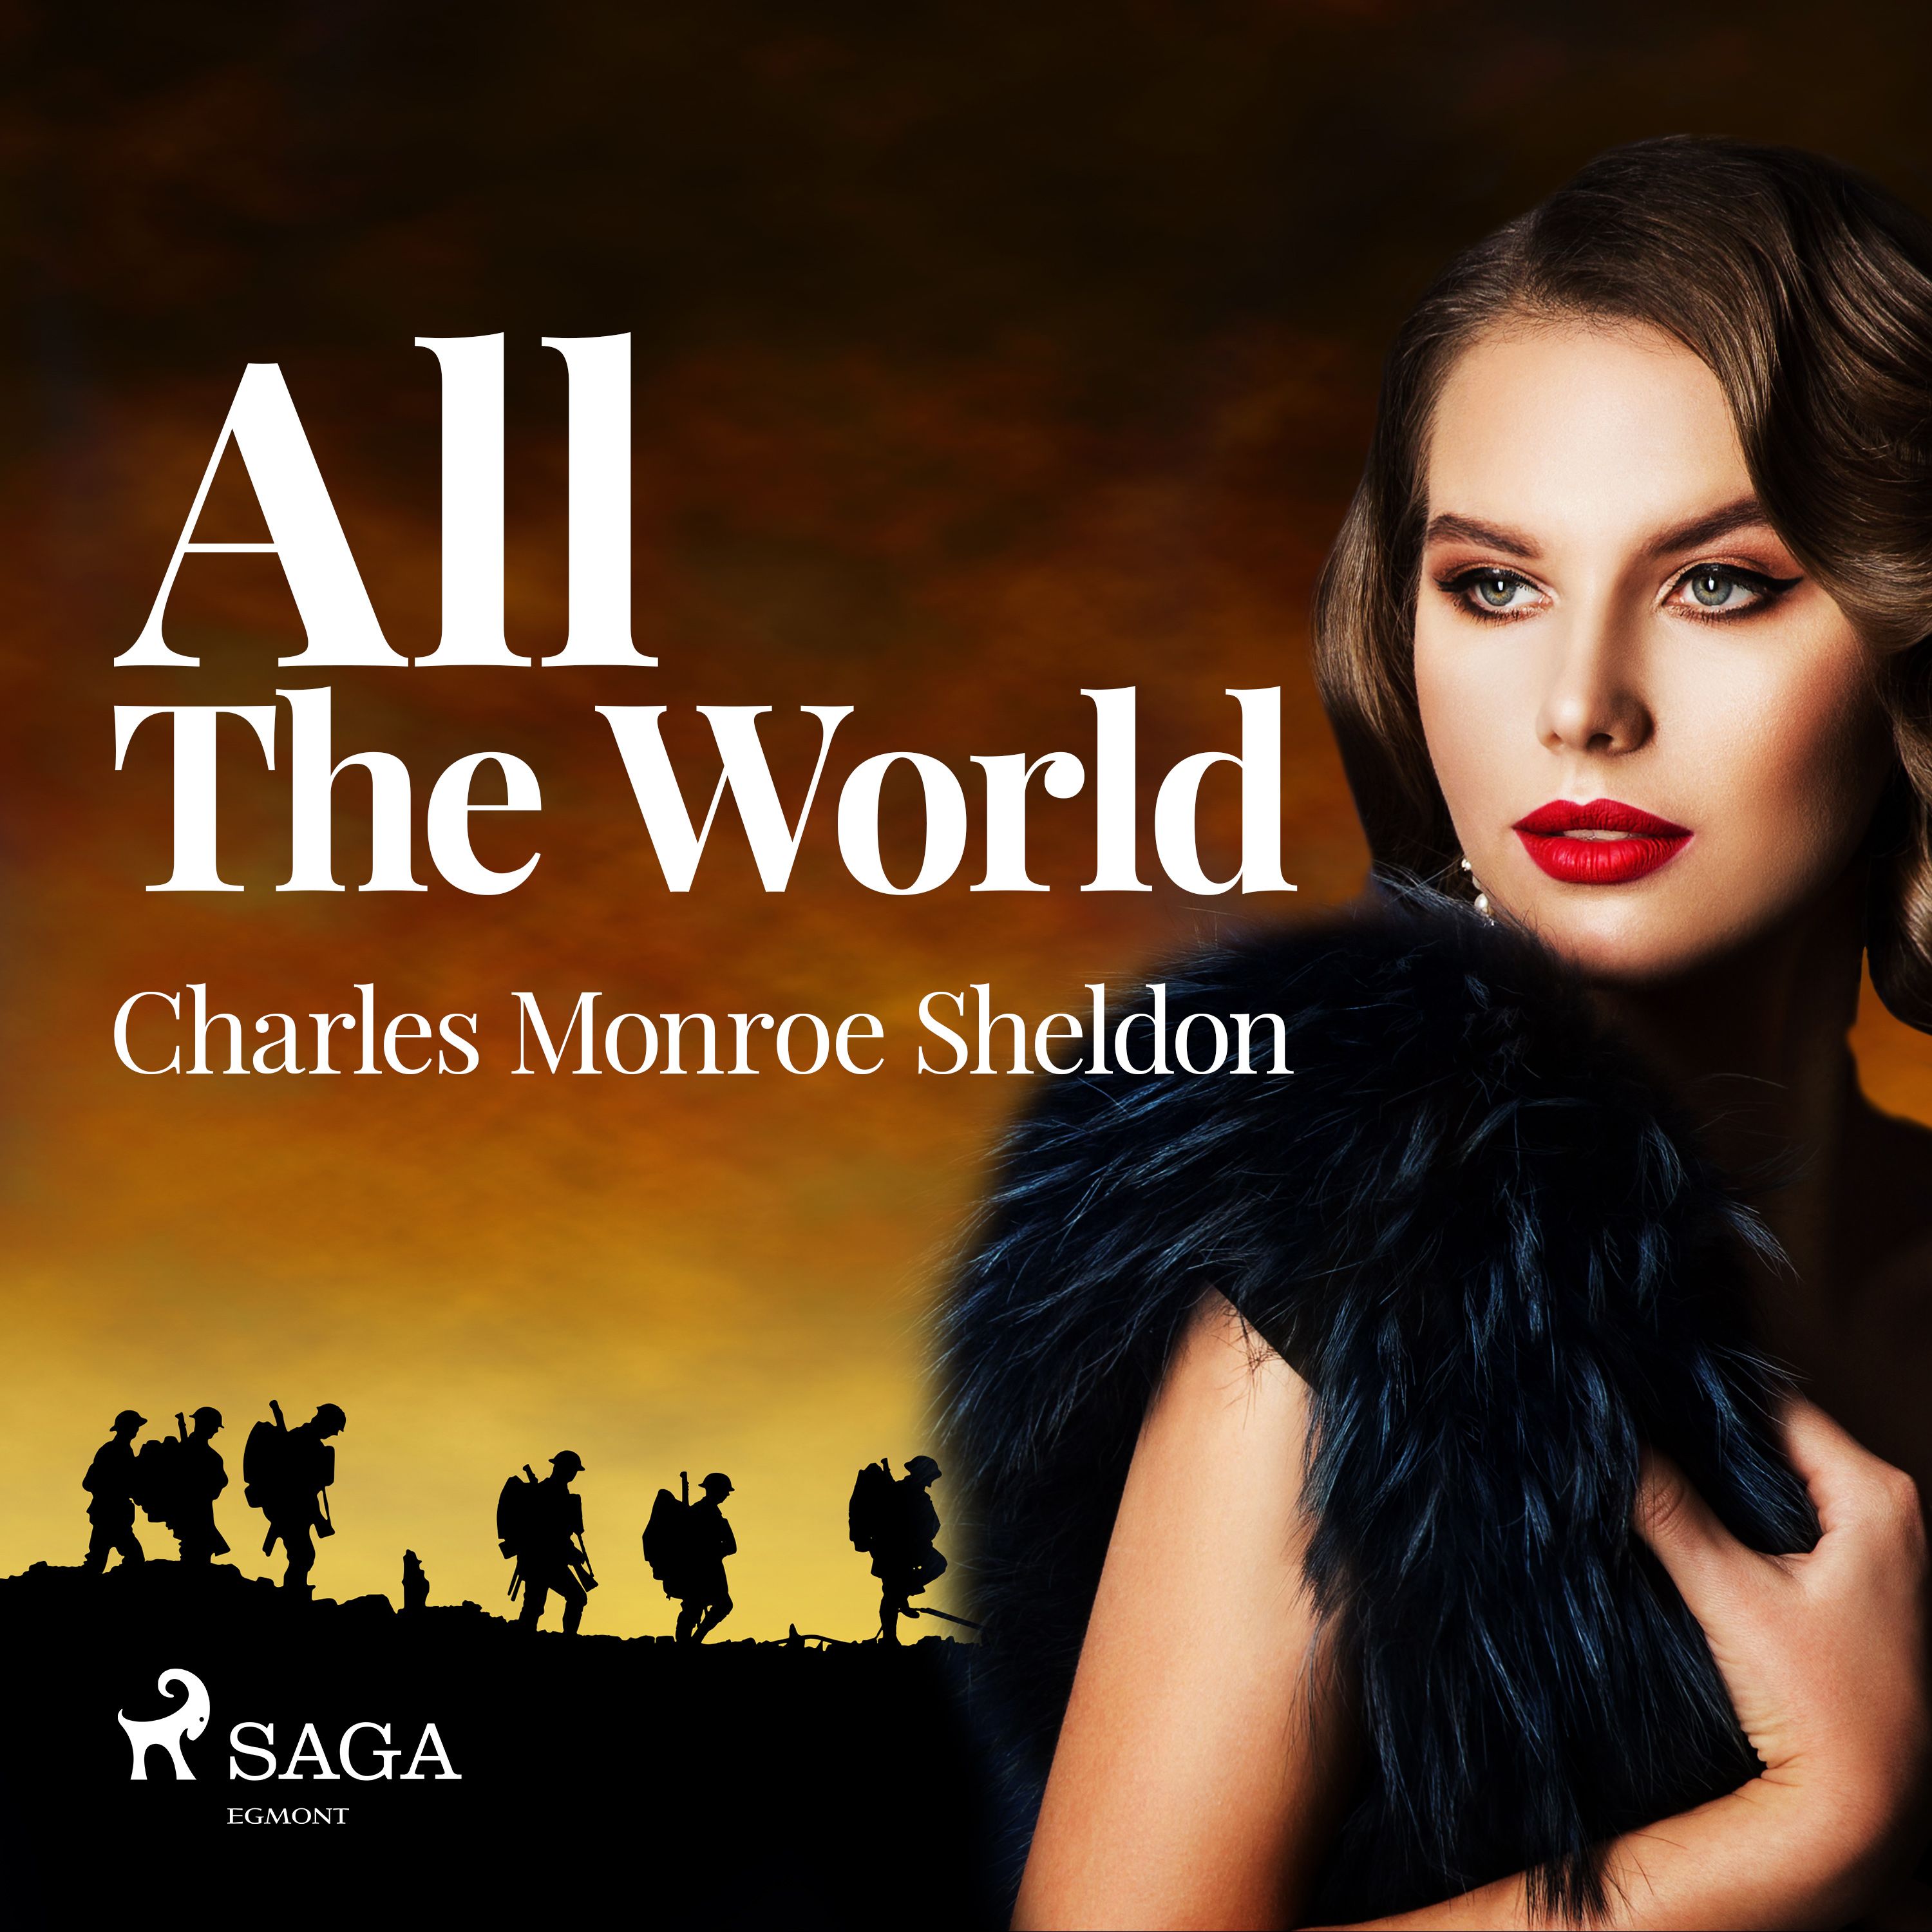 All The World, ljudbok av Charles Monroe Sheldon